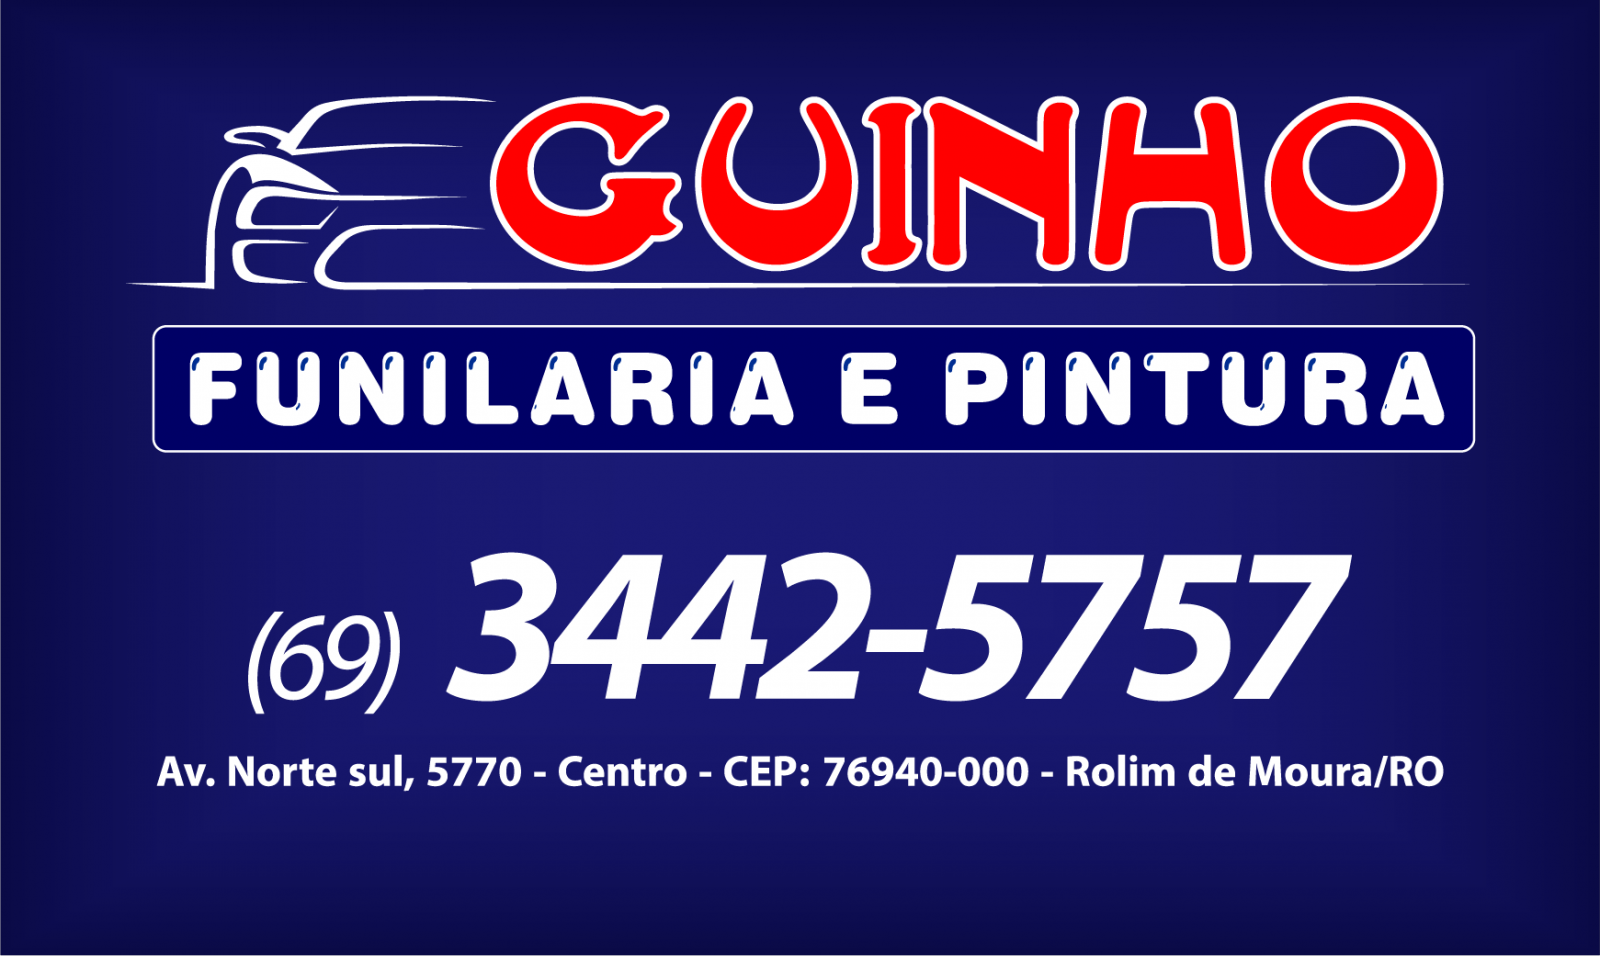 Guinho Funilaria